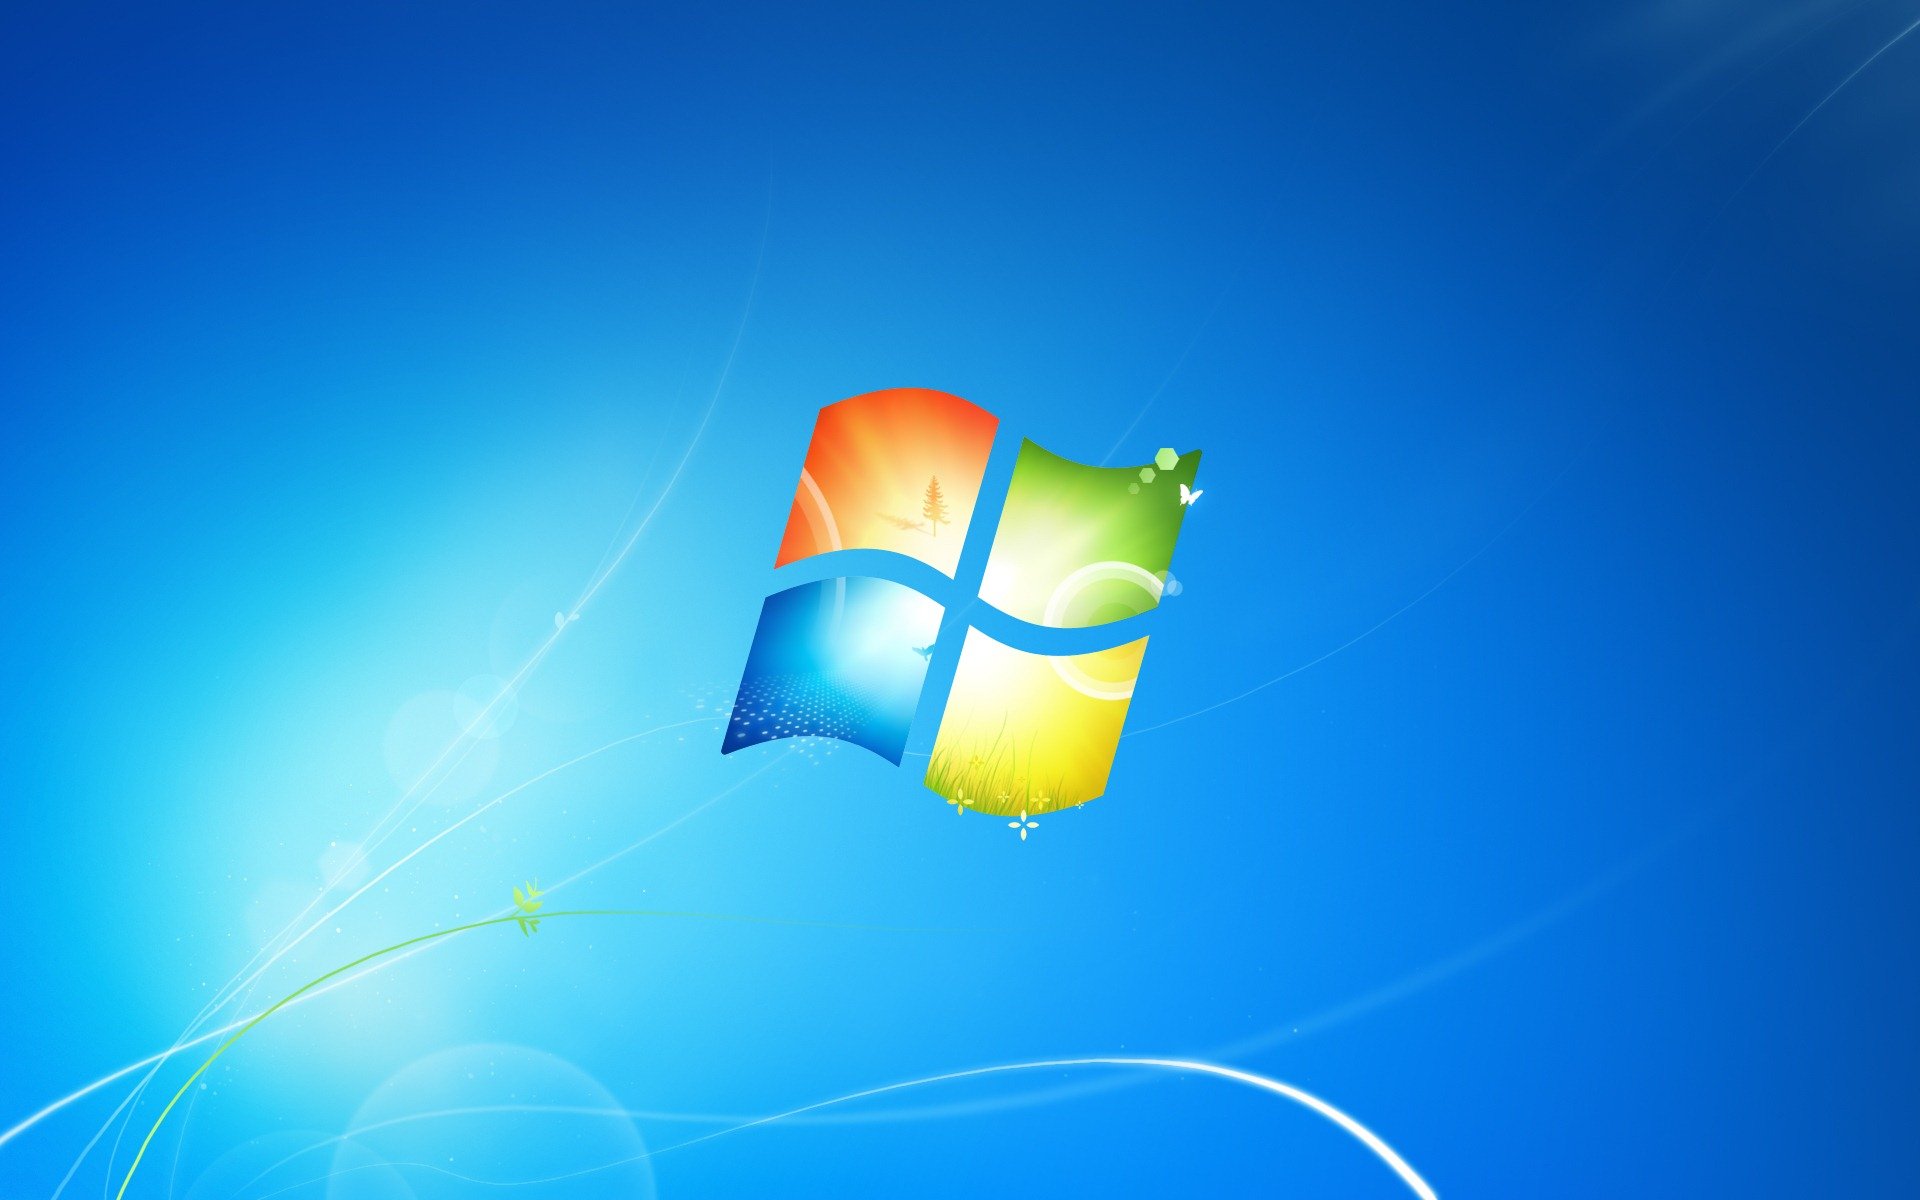 удаление Windows 7 с компьютера